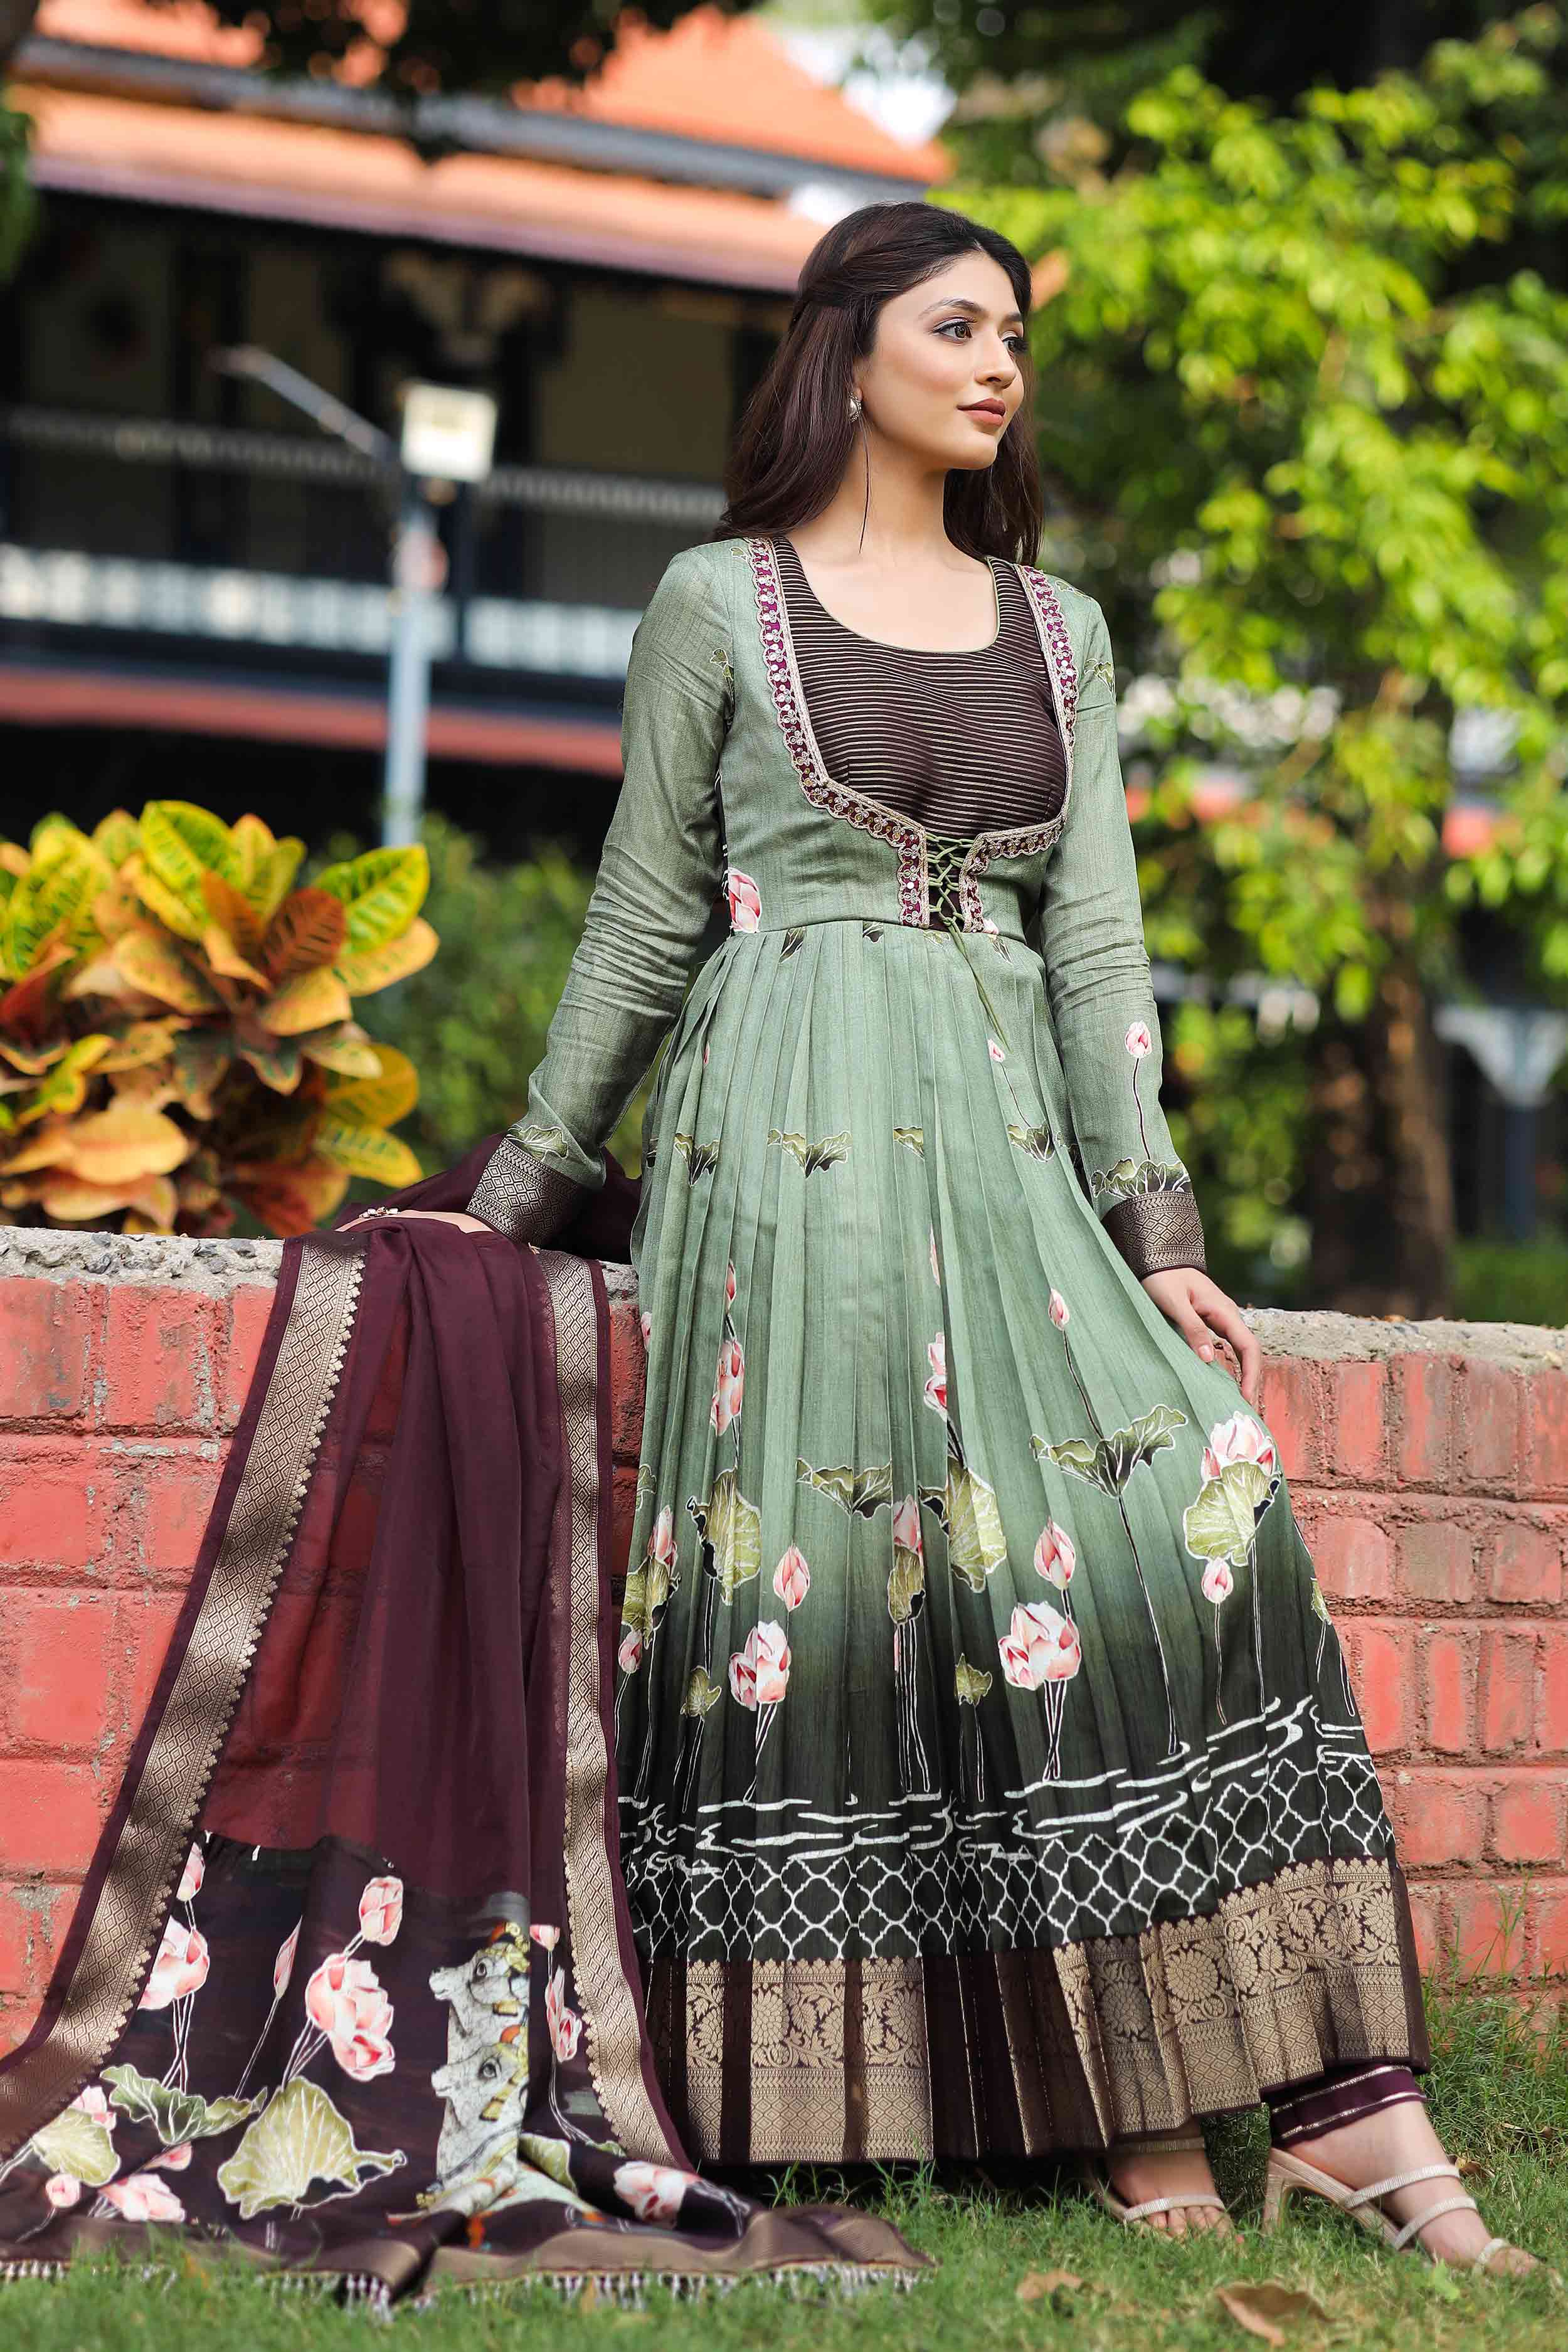 a woman in Anarkali dress